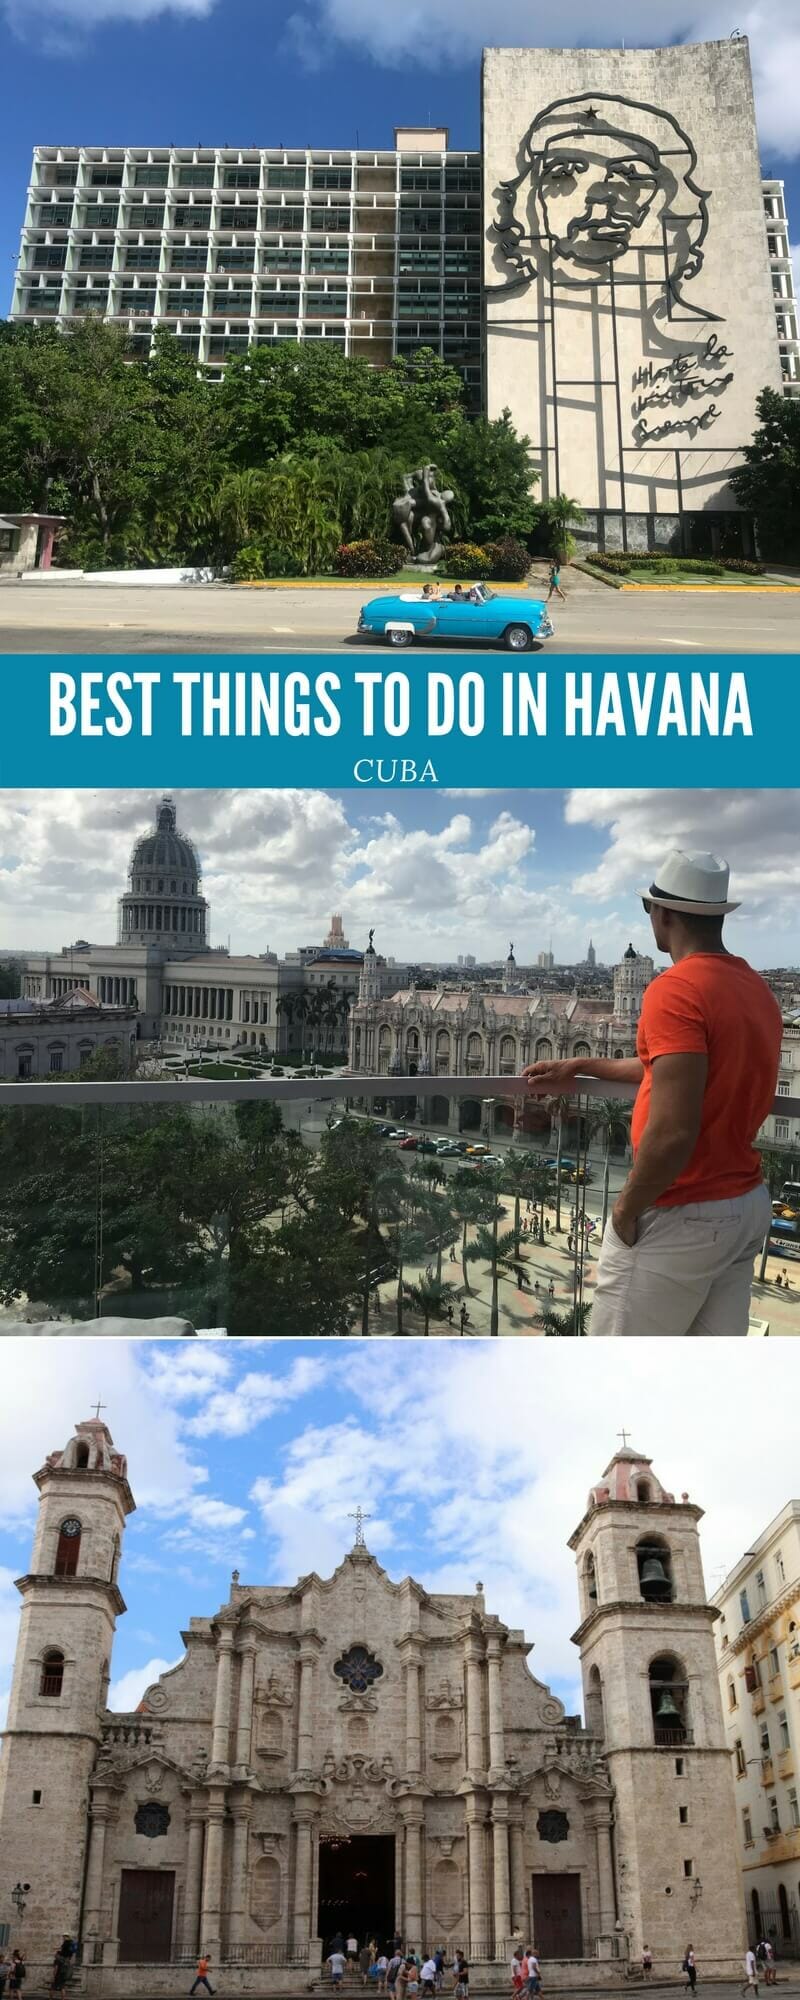 7 Best Things to Do in Havana, Cuba 2